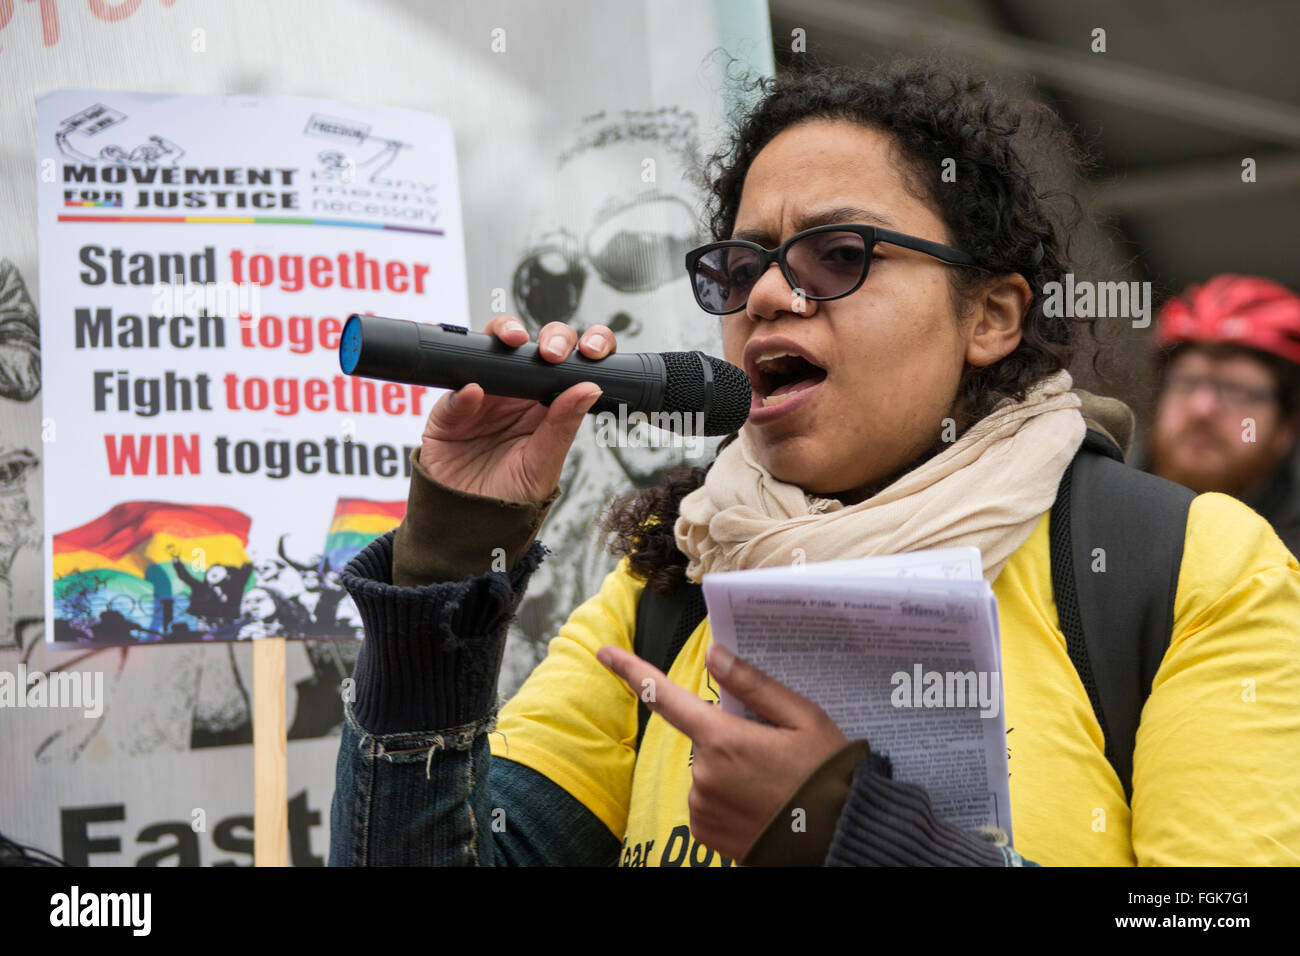 Peckham, Londres, 20 février 2016, une femme s'adresse à la foule lors de la manifestation à Peckham Square contre l'expulsion. Crédit : David Rowe/Alamy Live News Banque D'Images